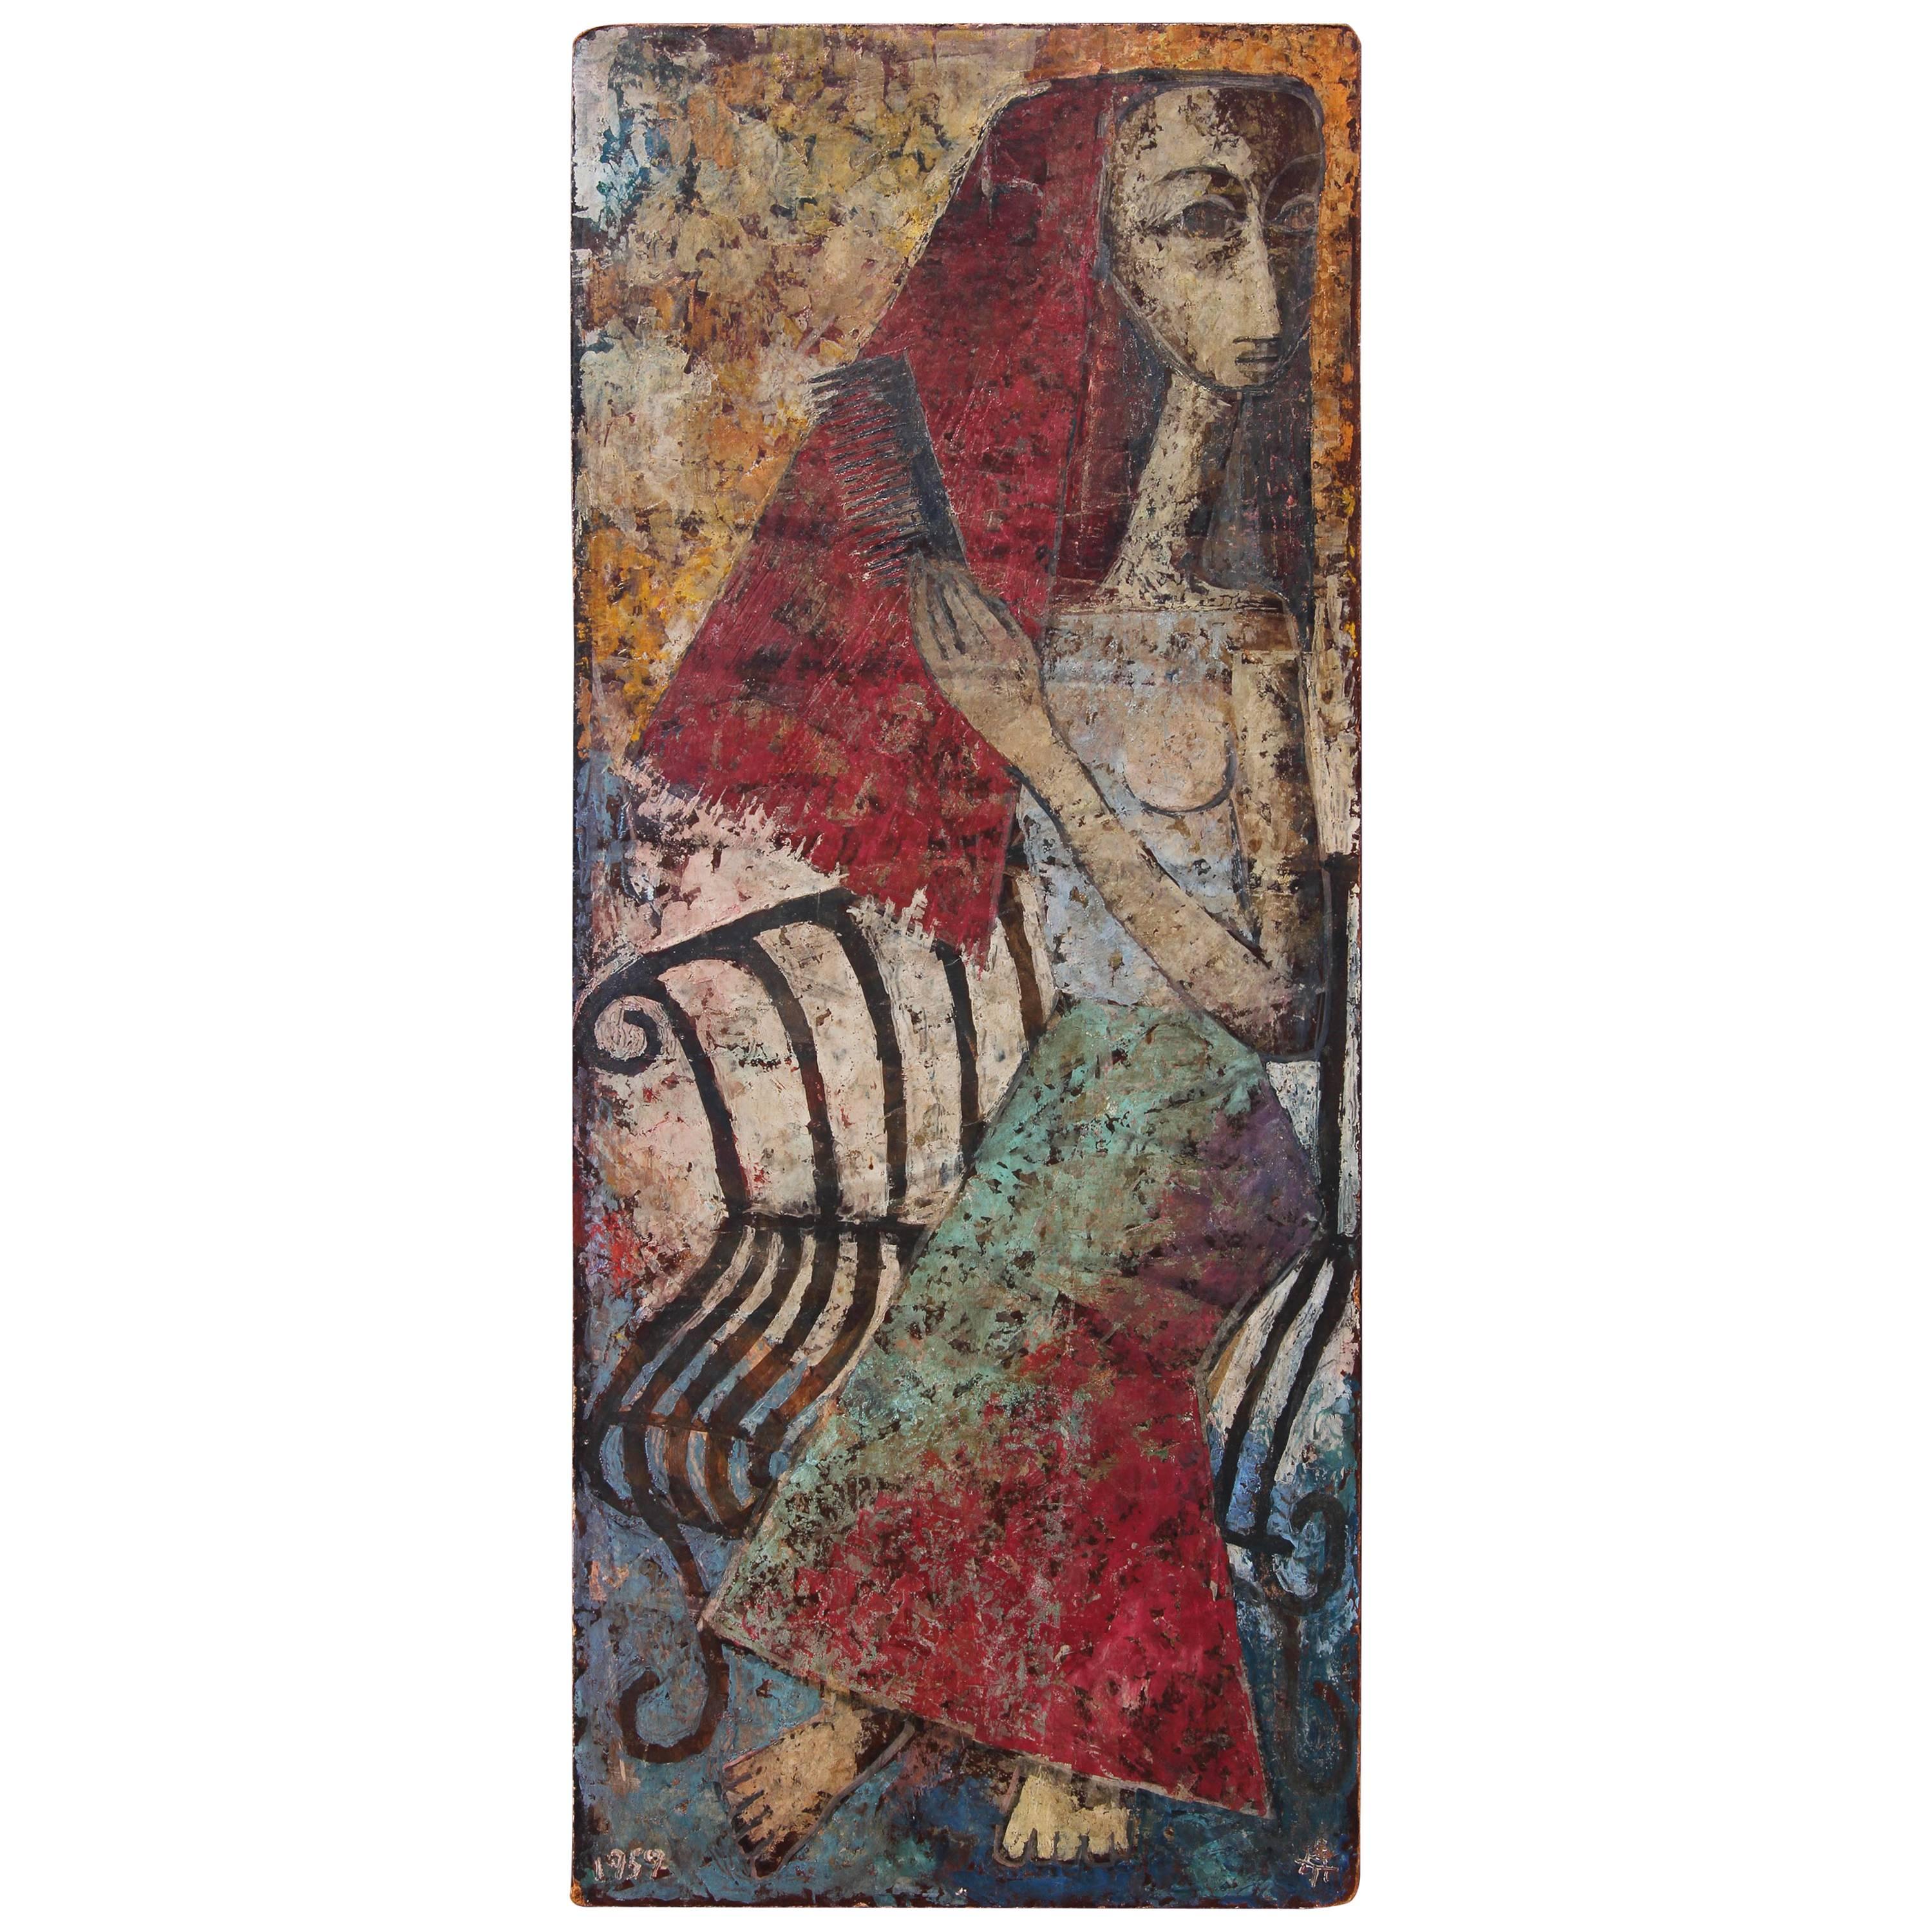 Abstraktes impressionistisches Ölgemälde "Mexikanische Frau" aus dem Jahr 1959